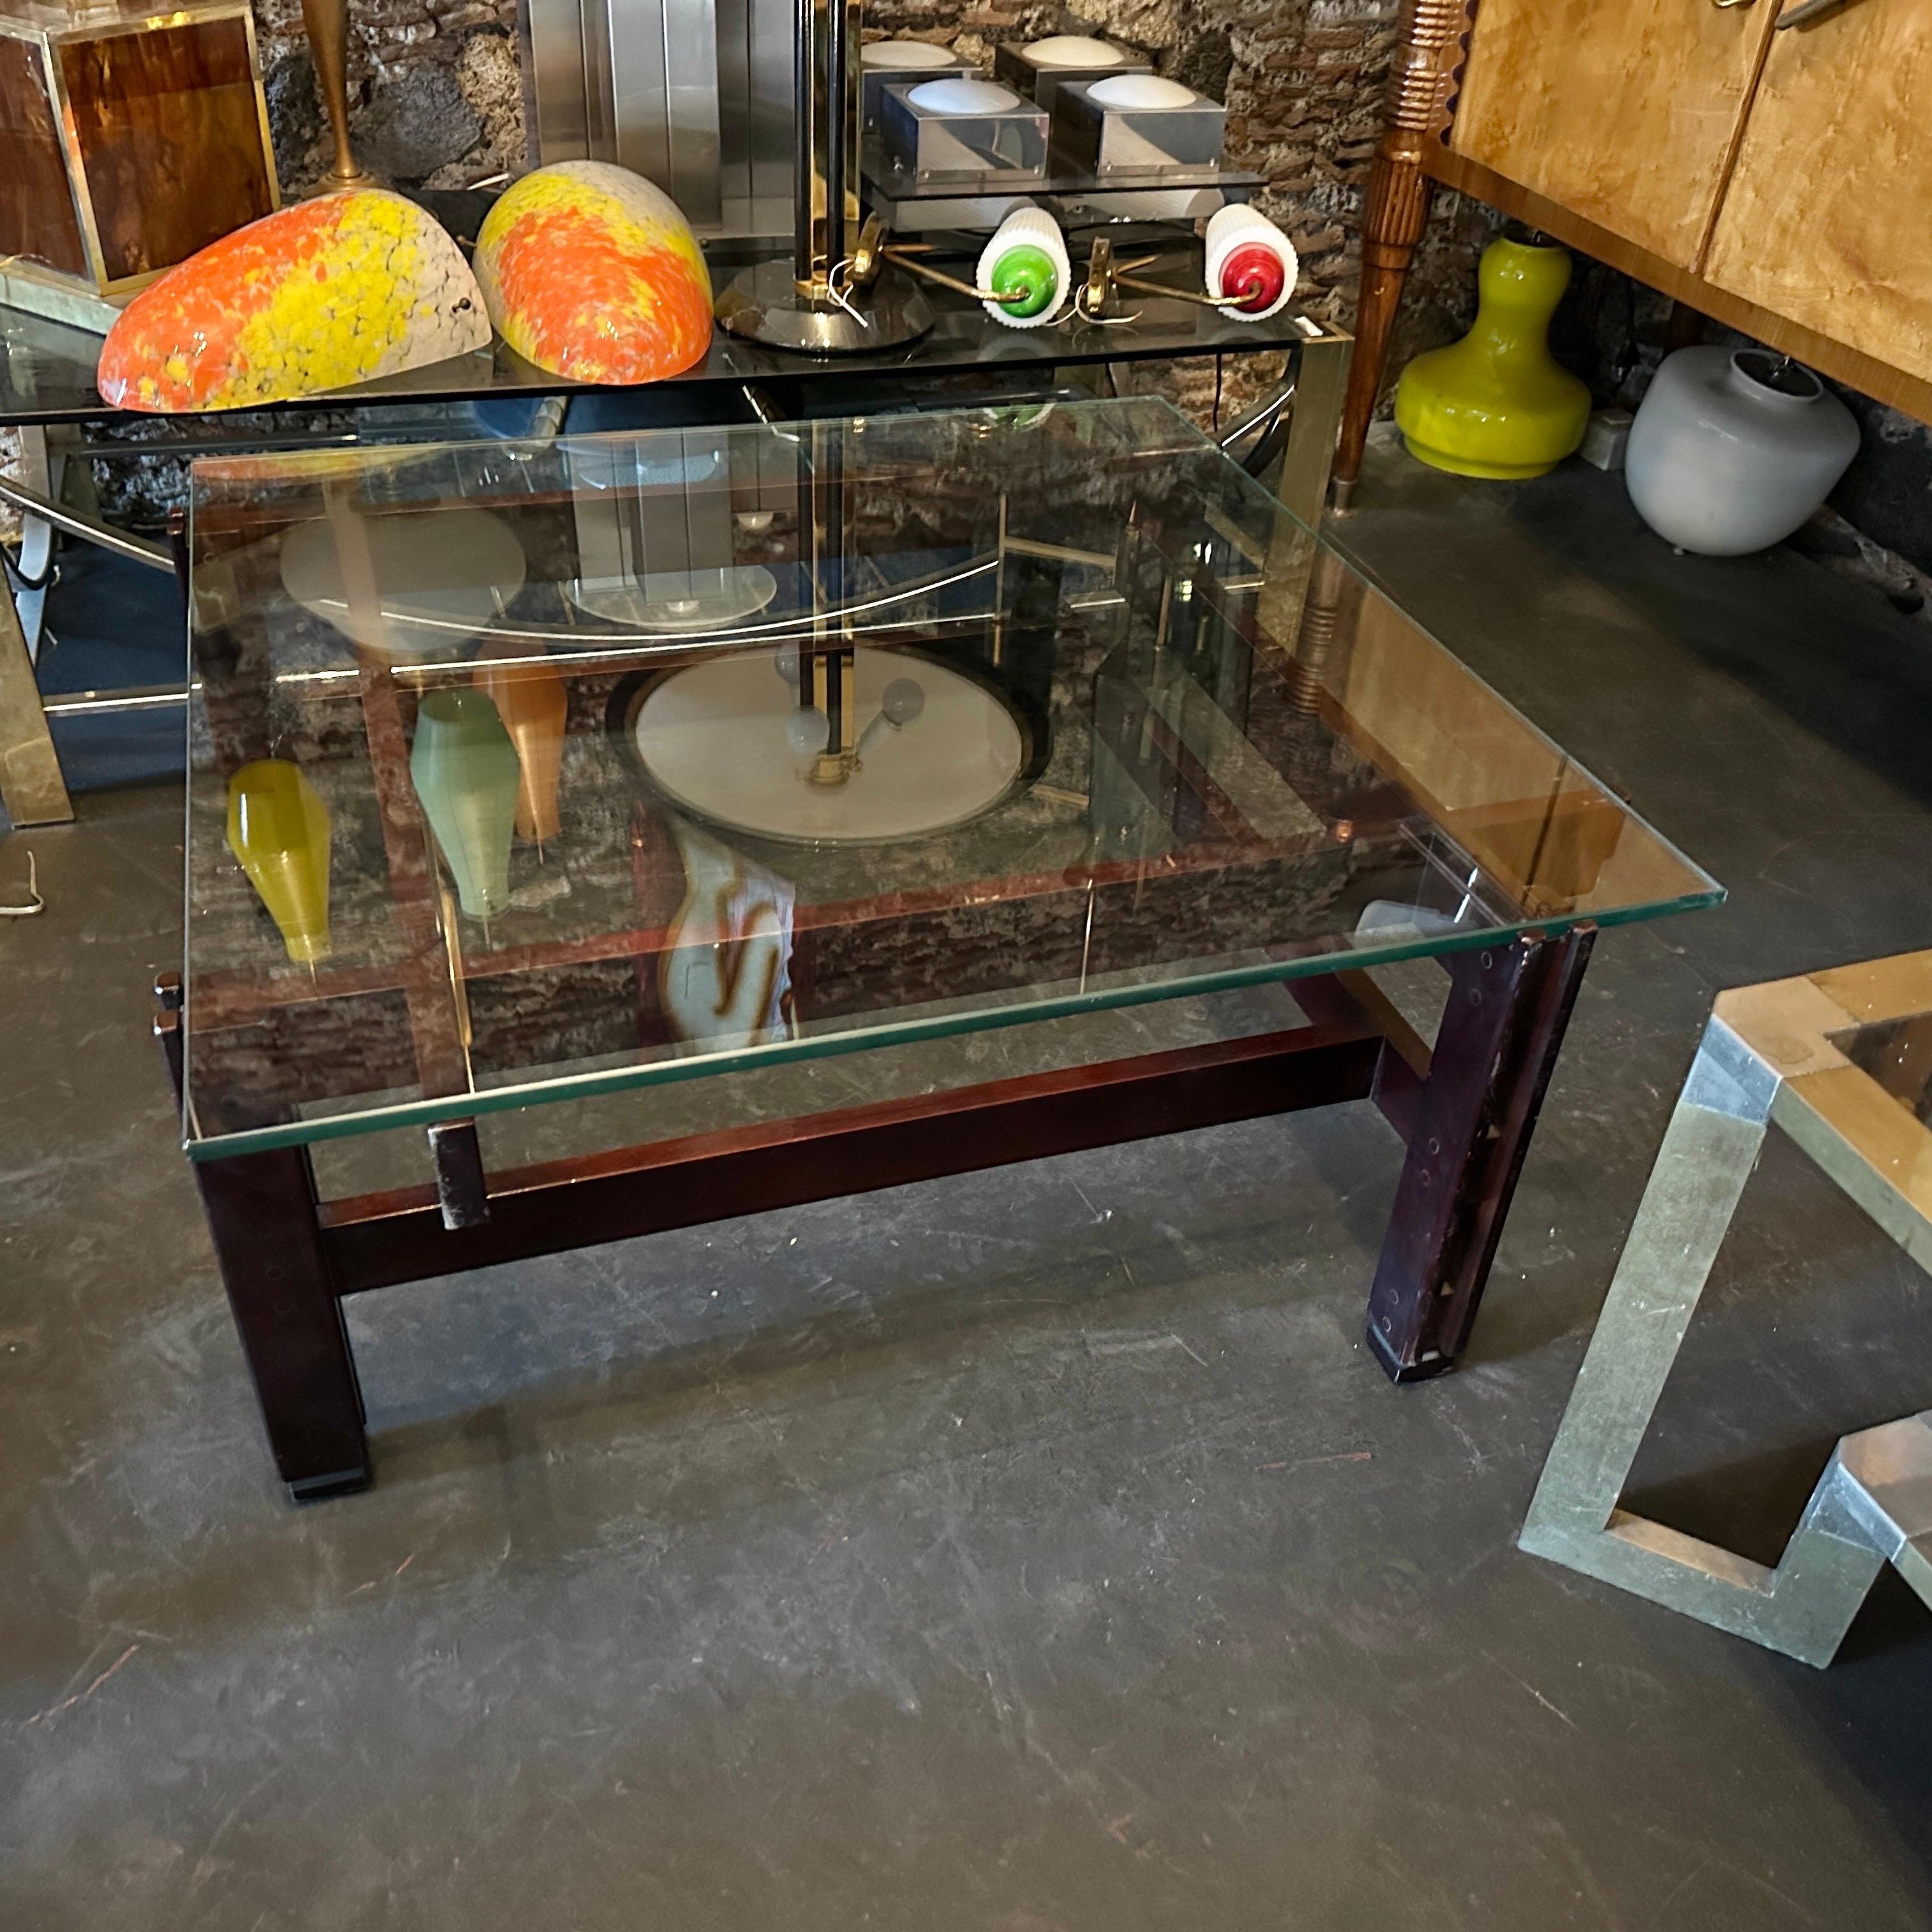 Une table basse carrée nr 751 conçue par Ico Parisi, fabriquée par Cassina, elle est labellisée cassina et présente des signes normaux d'utilisation et d'âge sur le bois et le verre. Il s'agit d'un exemple classique de mobilier moderne du milieu du